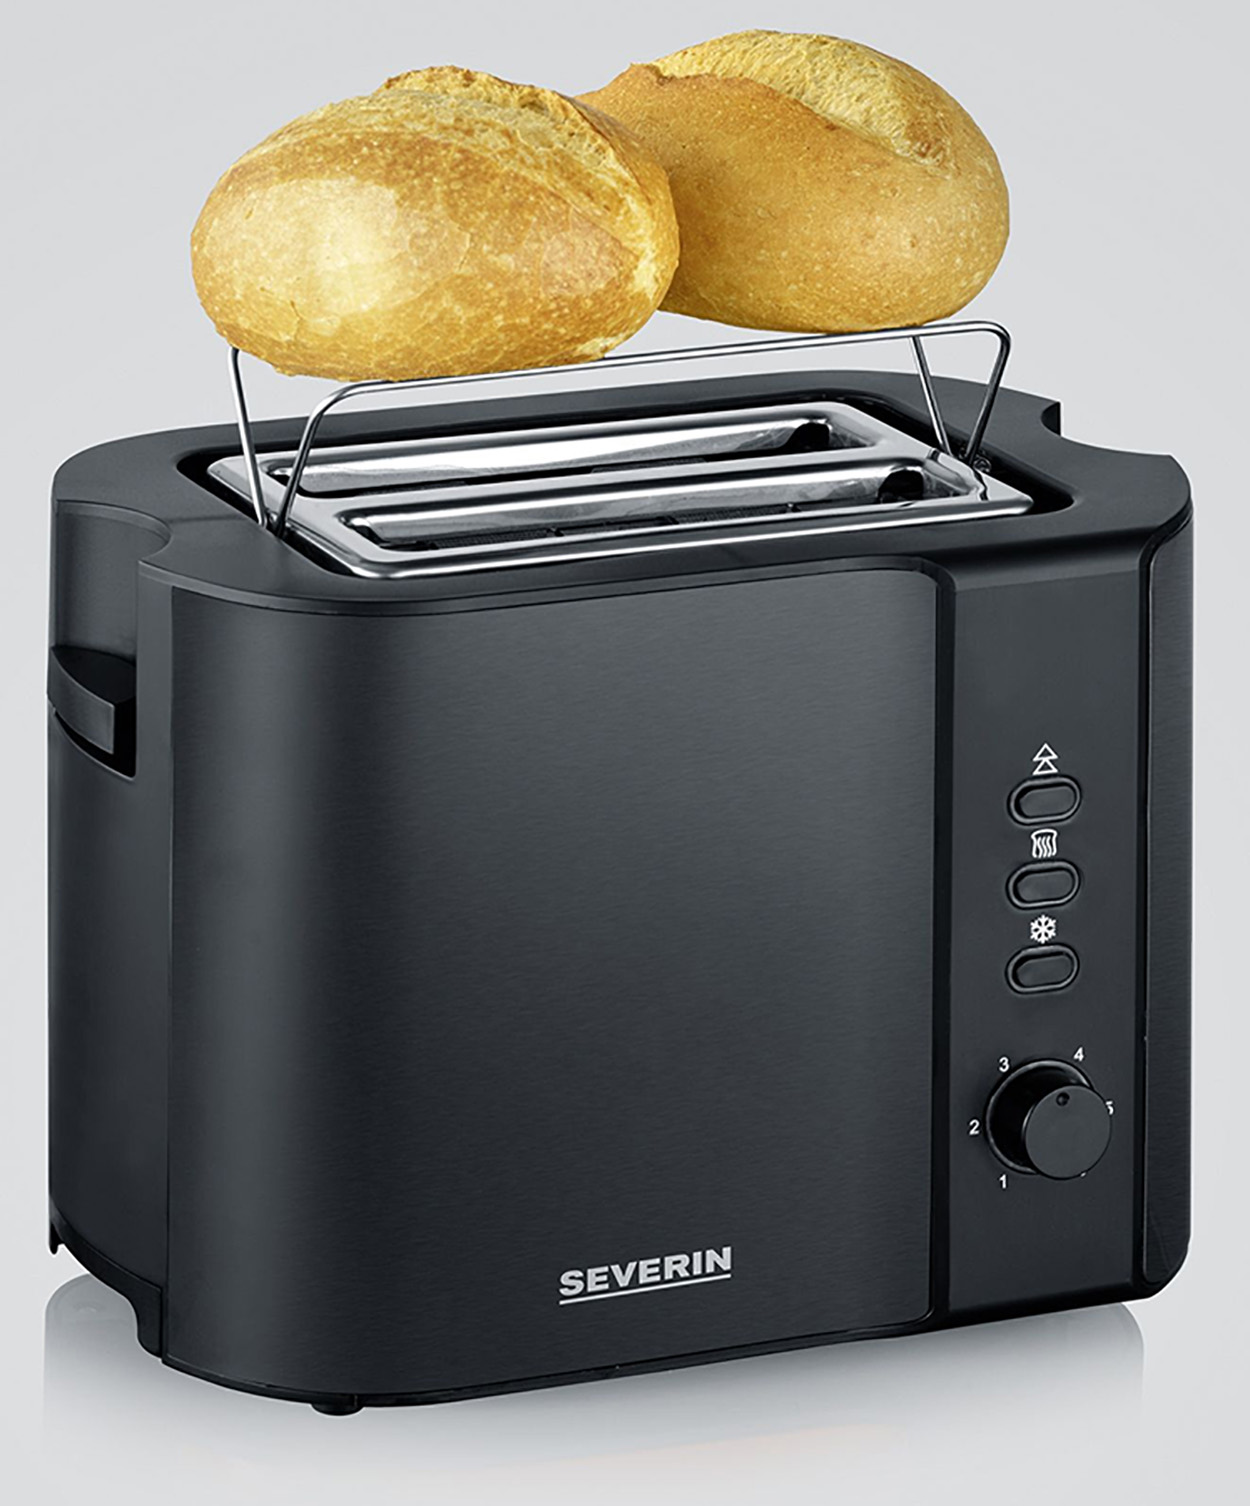 AT (800 SEVERIN 2) schwarz 9552 Watt, Schlitze: Toaster